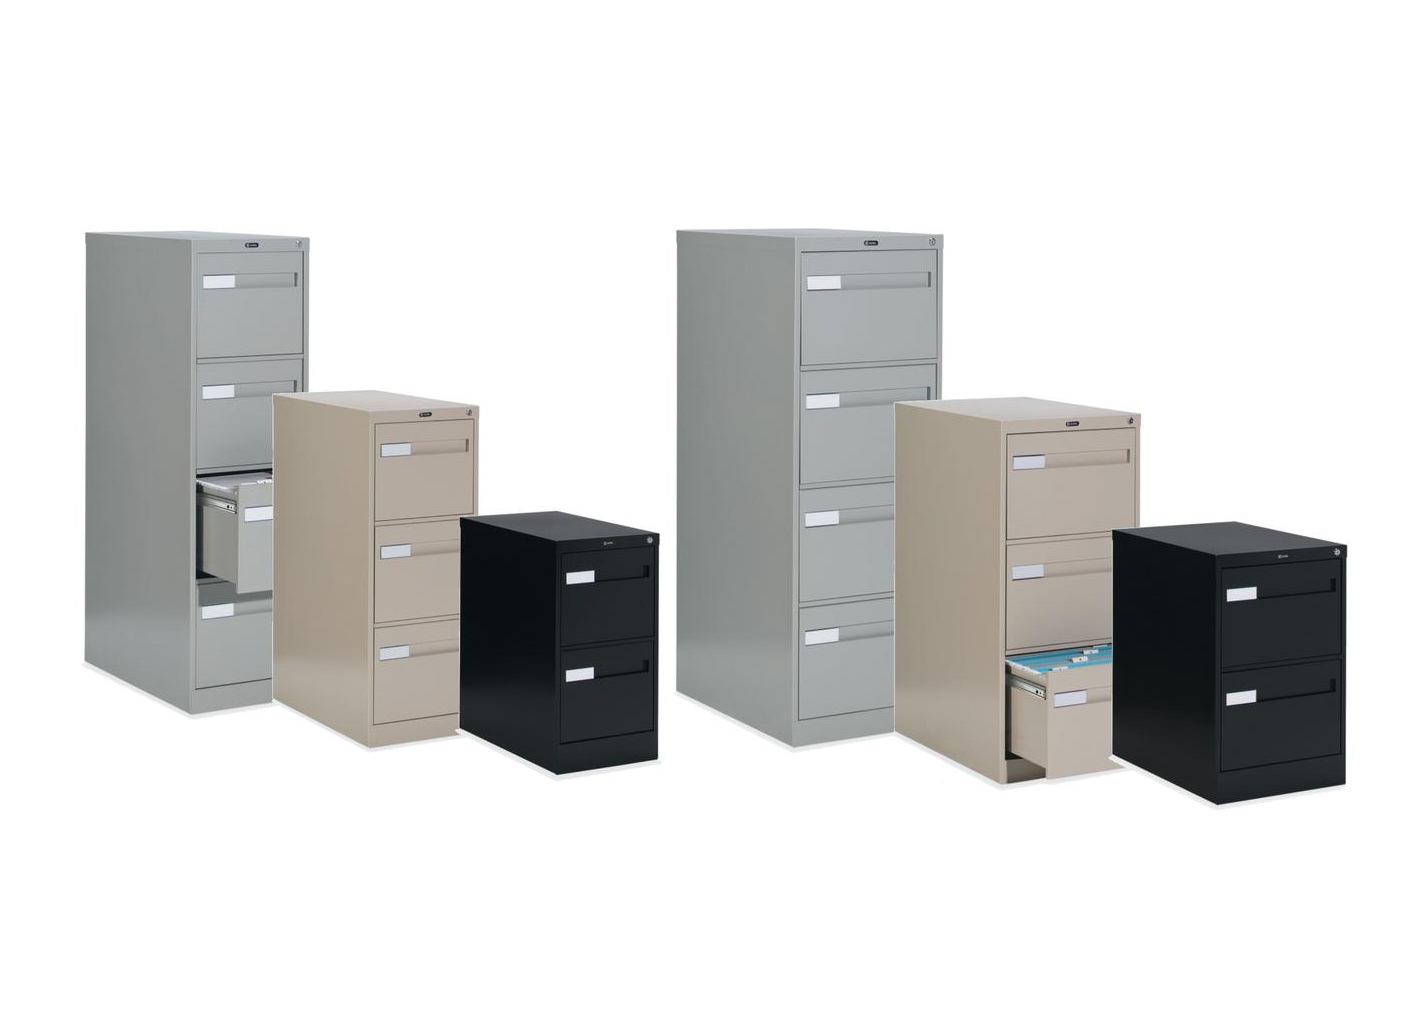 钢制文件柜|文件柜系列|办公家具|中国有限公司官家具|Meridian 2600 Plus 文件柜系列